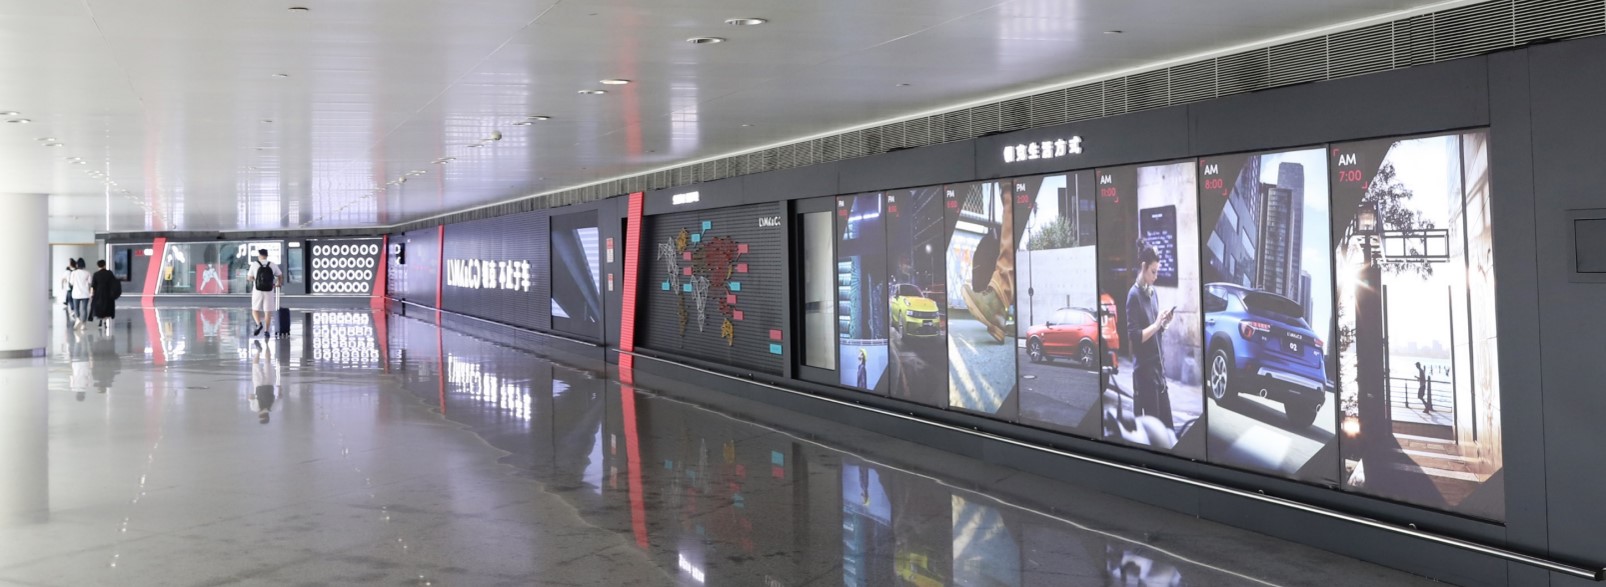 杭州萧山机场广告-T3到达通廊灯箱DA59